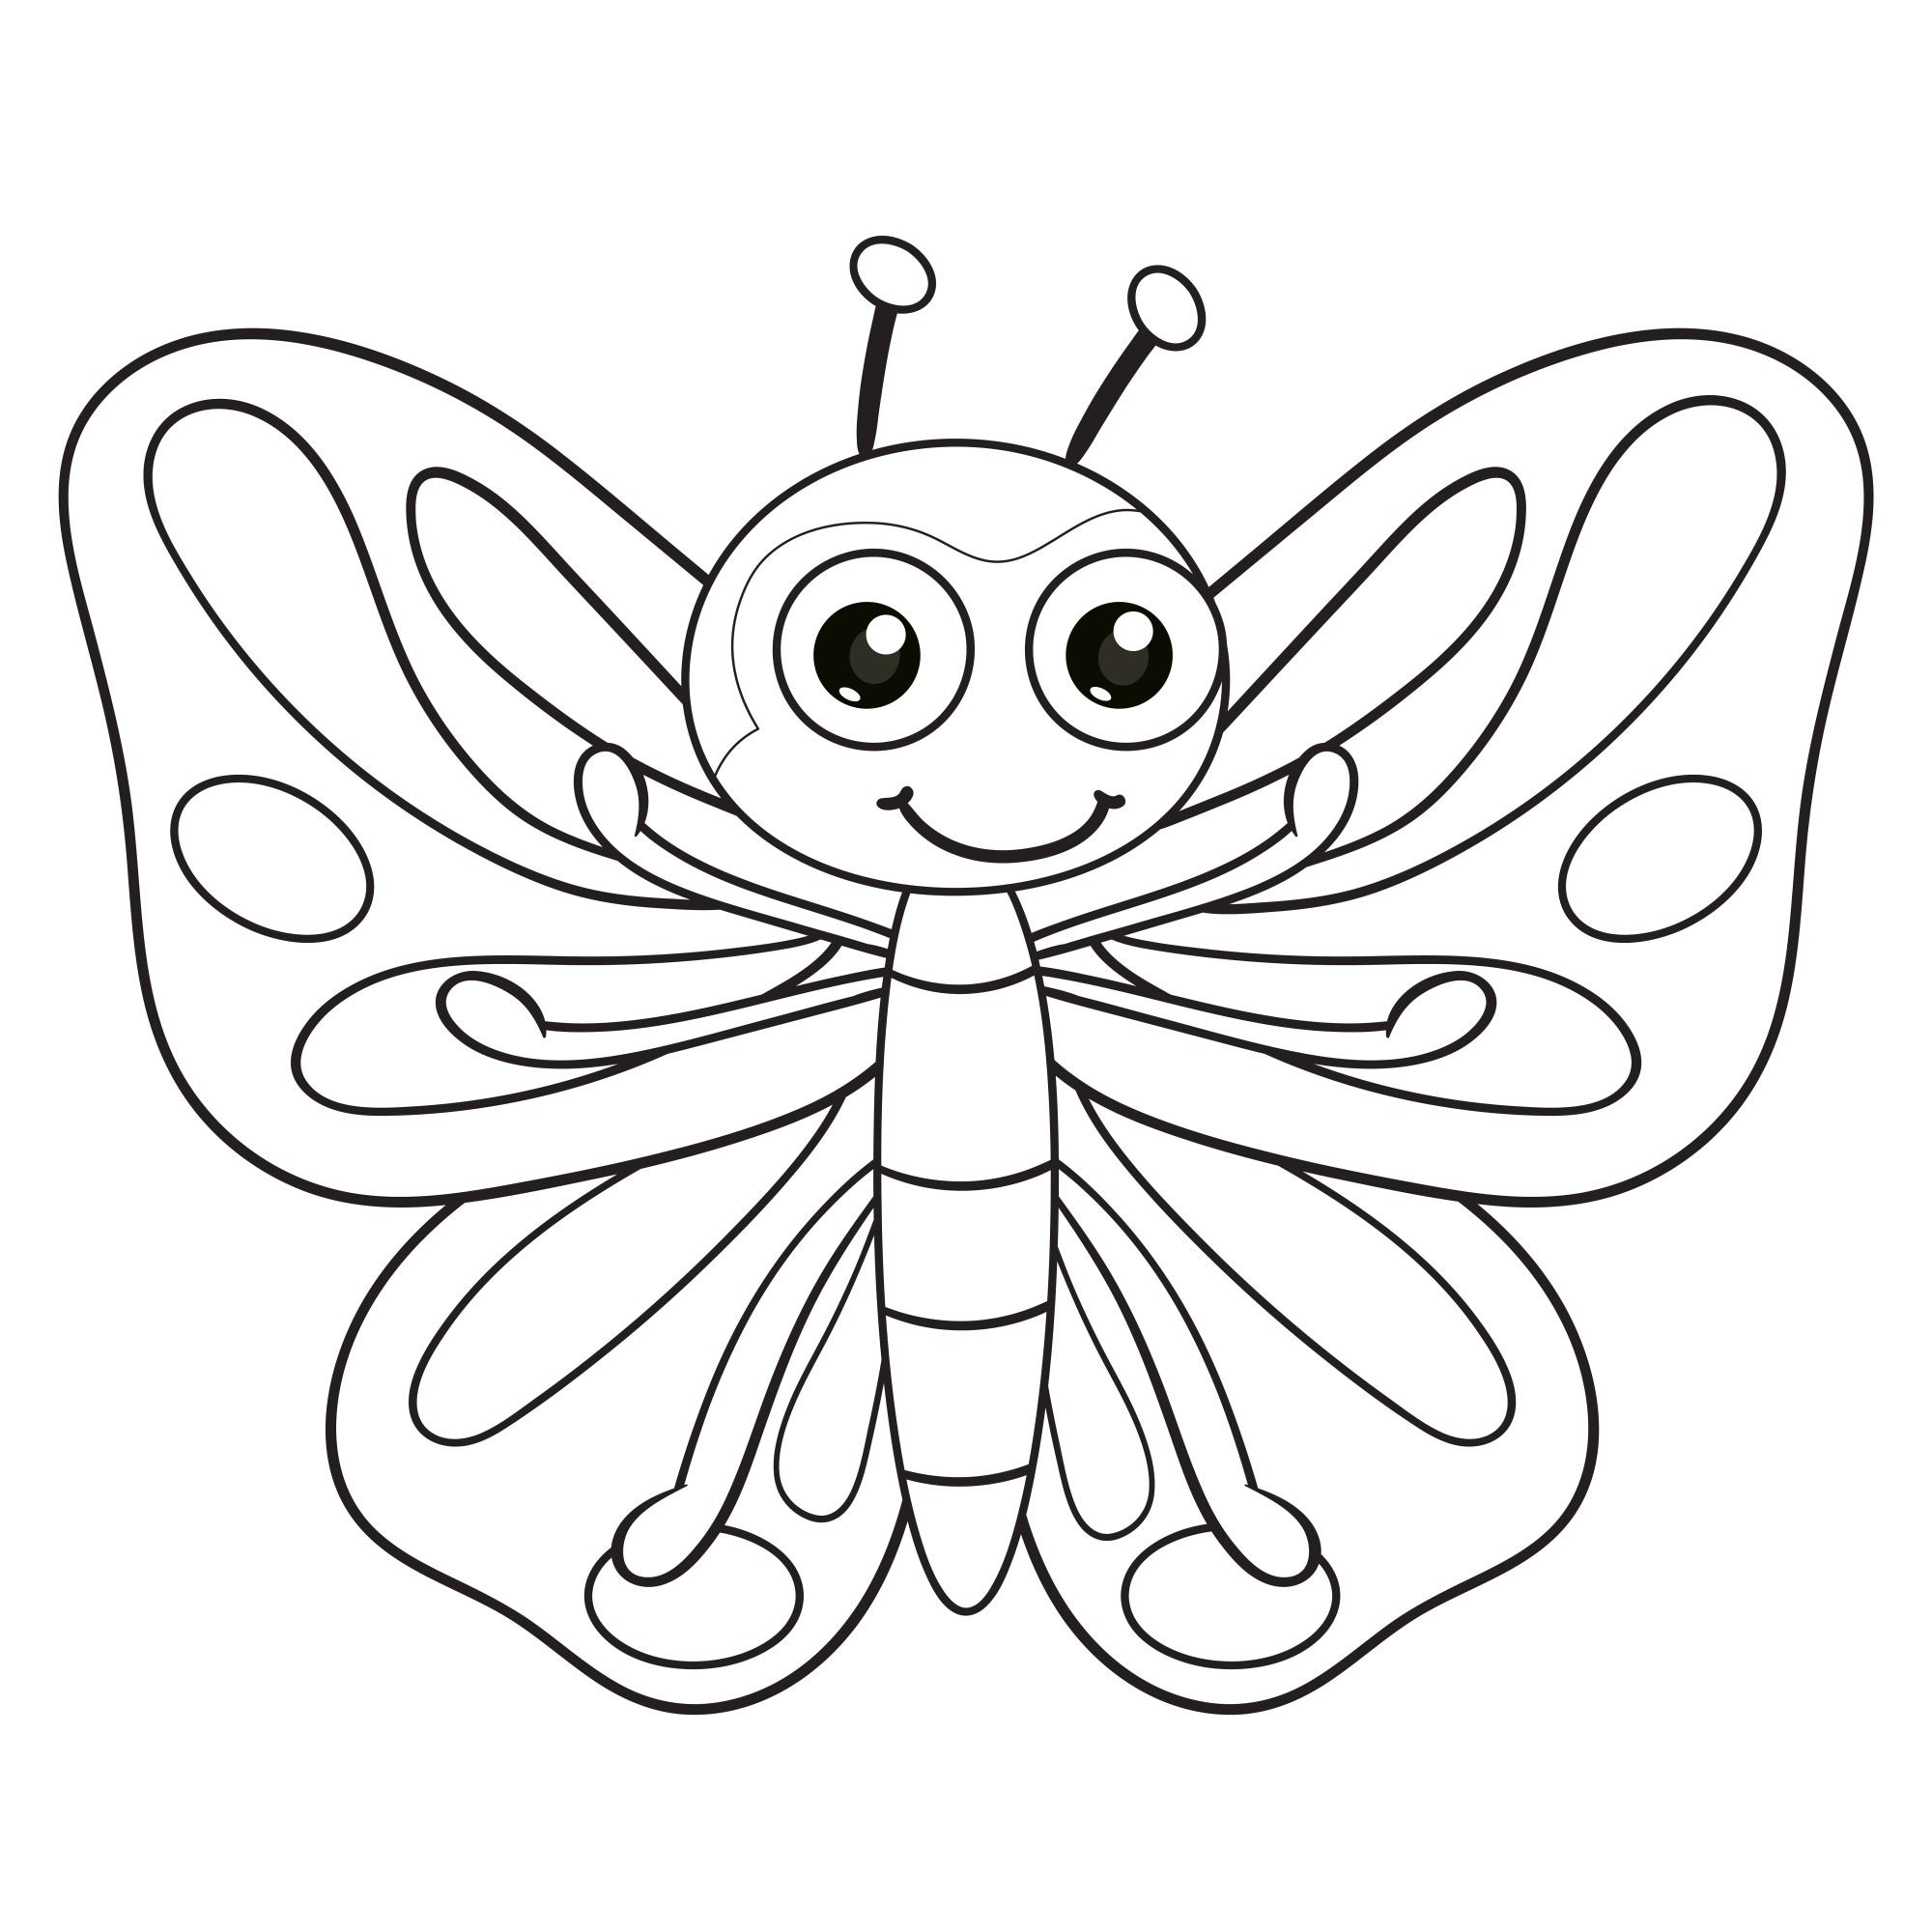 Раскраска для детей: прекрасная бабочка с большими глазами